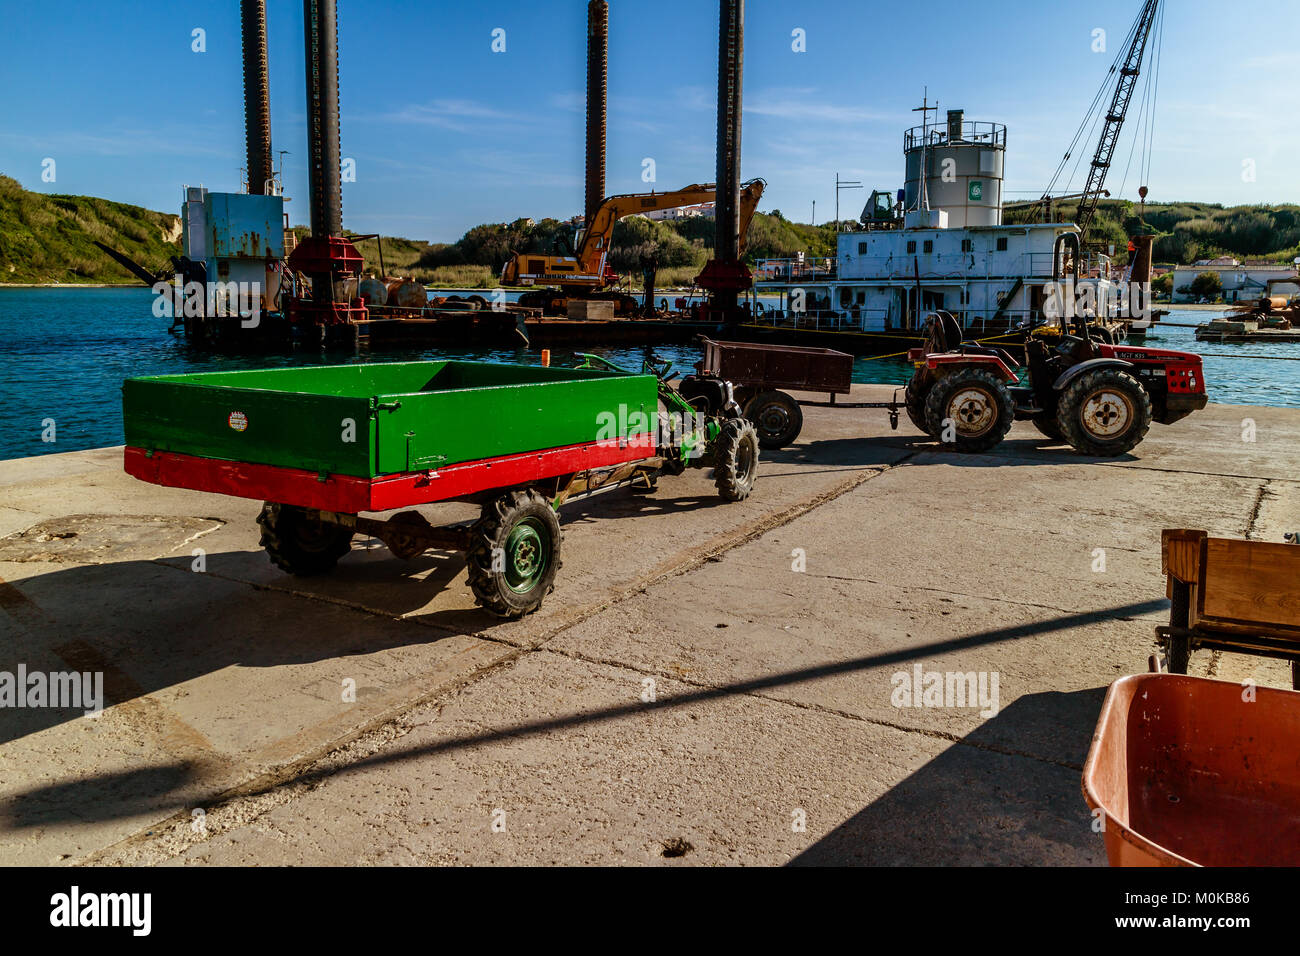 Carrello sulla banchina in attesa di raccogliere beni dal traghetto, Susak, Croazia. Maggio 2017. Foto Stock